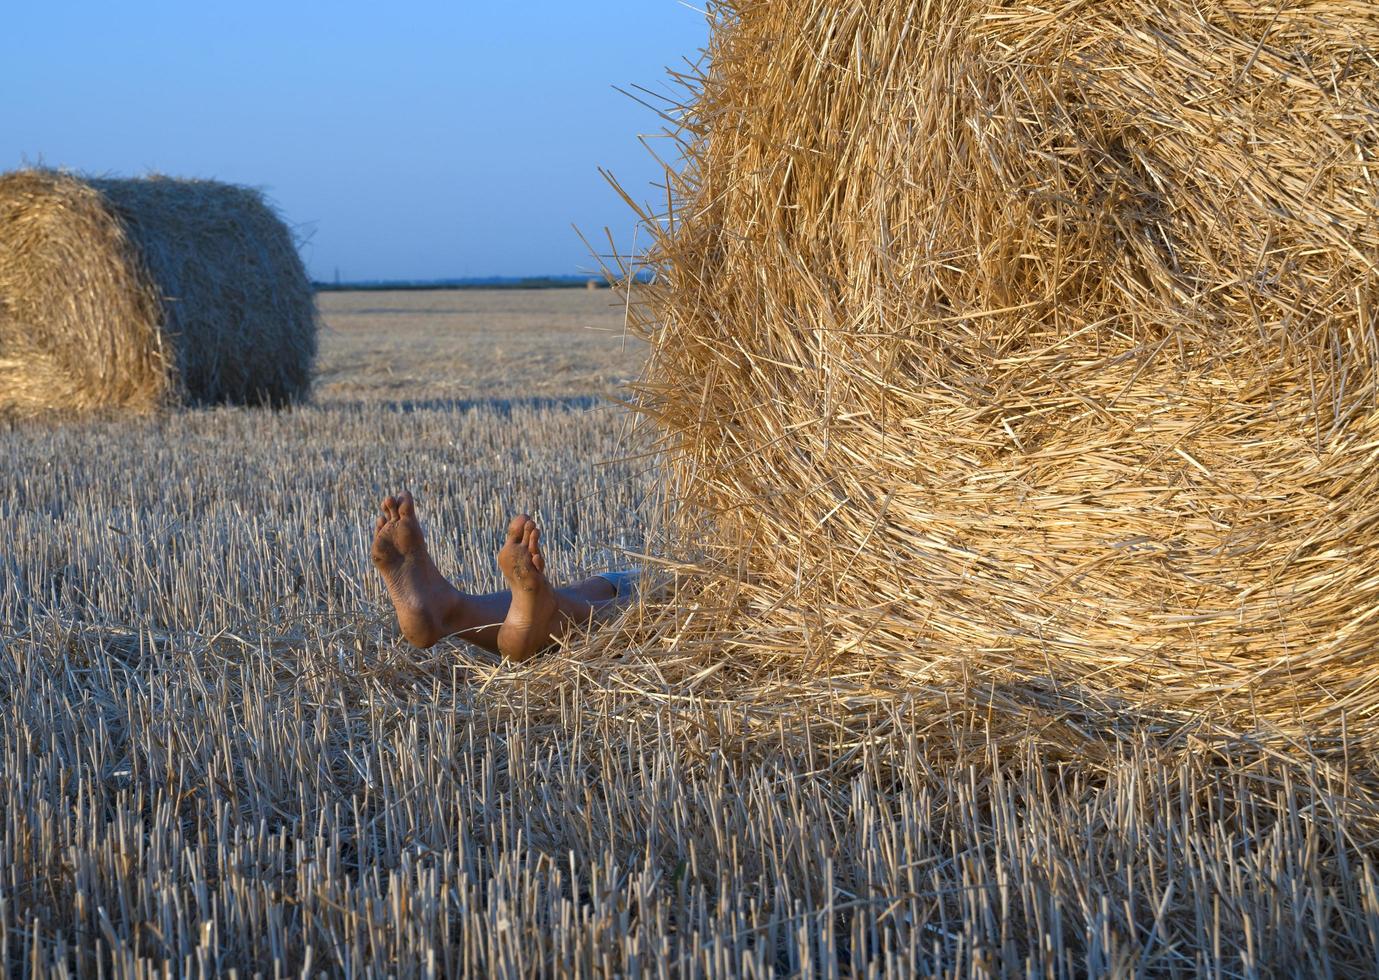 pernas de uma pessoa deitada atrás de um fardo de palha em um campo agrícola foto